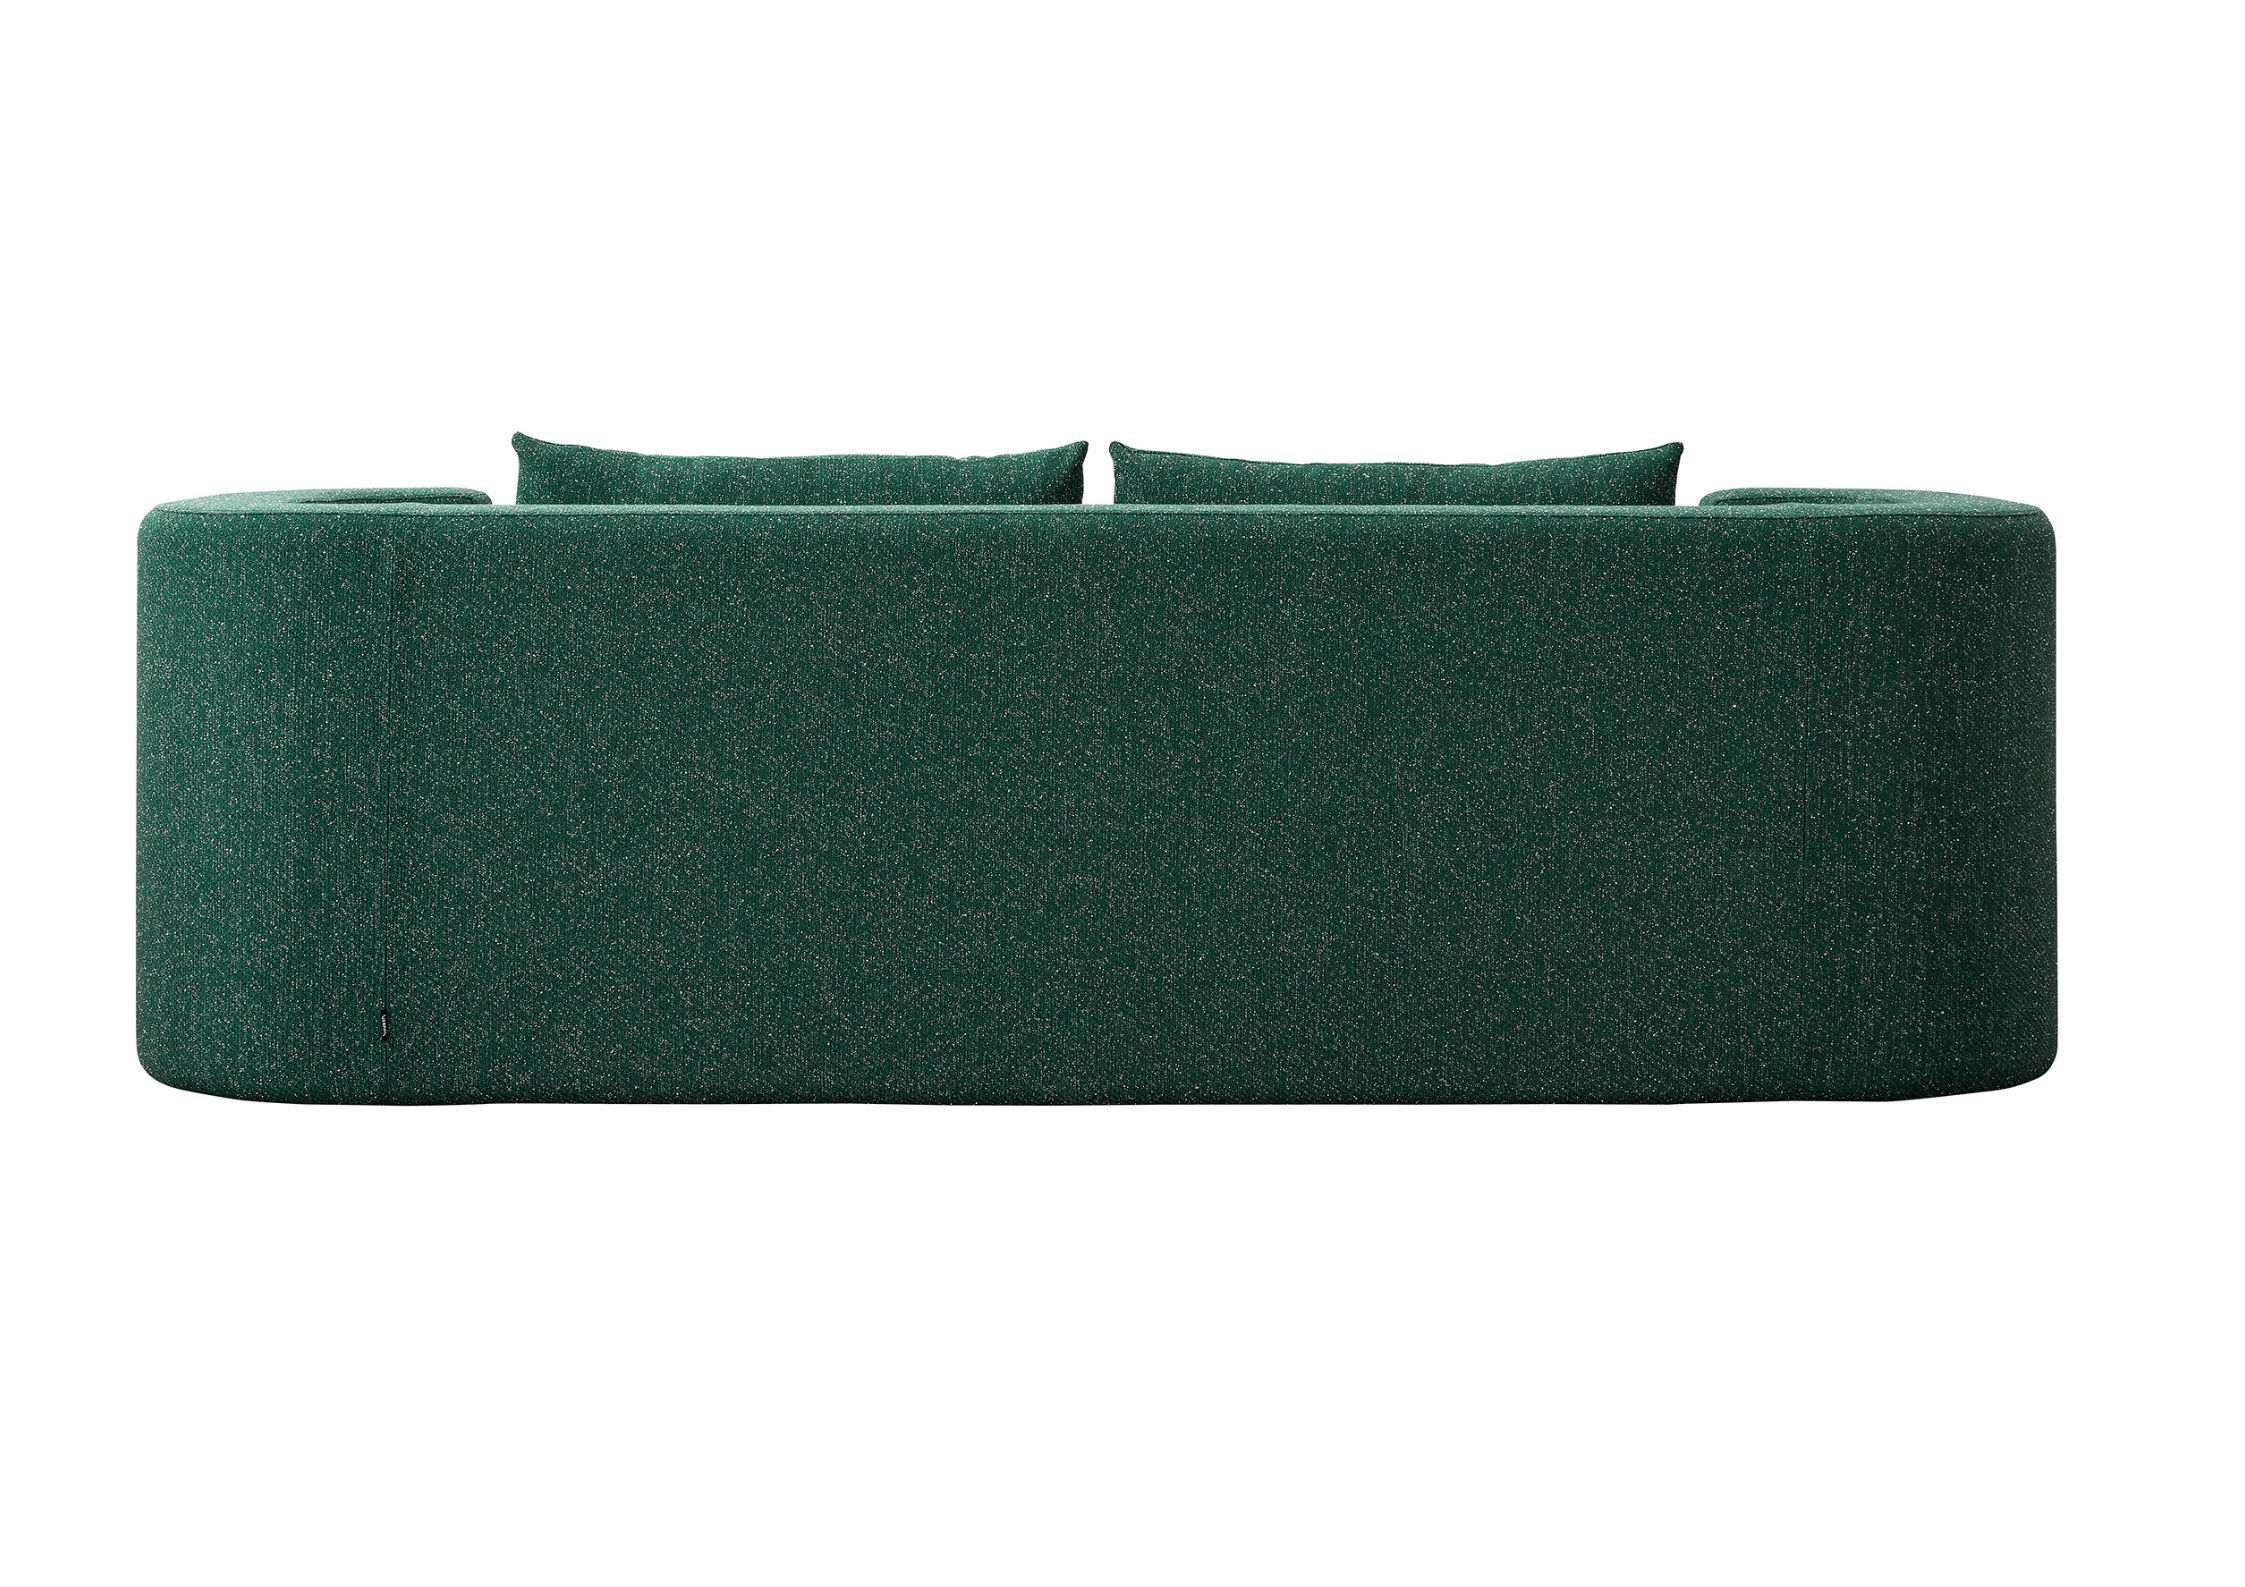 Sofa VP168 - kolor do wyboru Verpan    Eye on Design